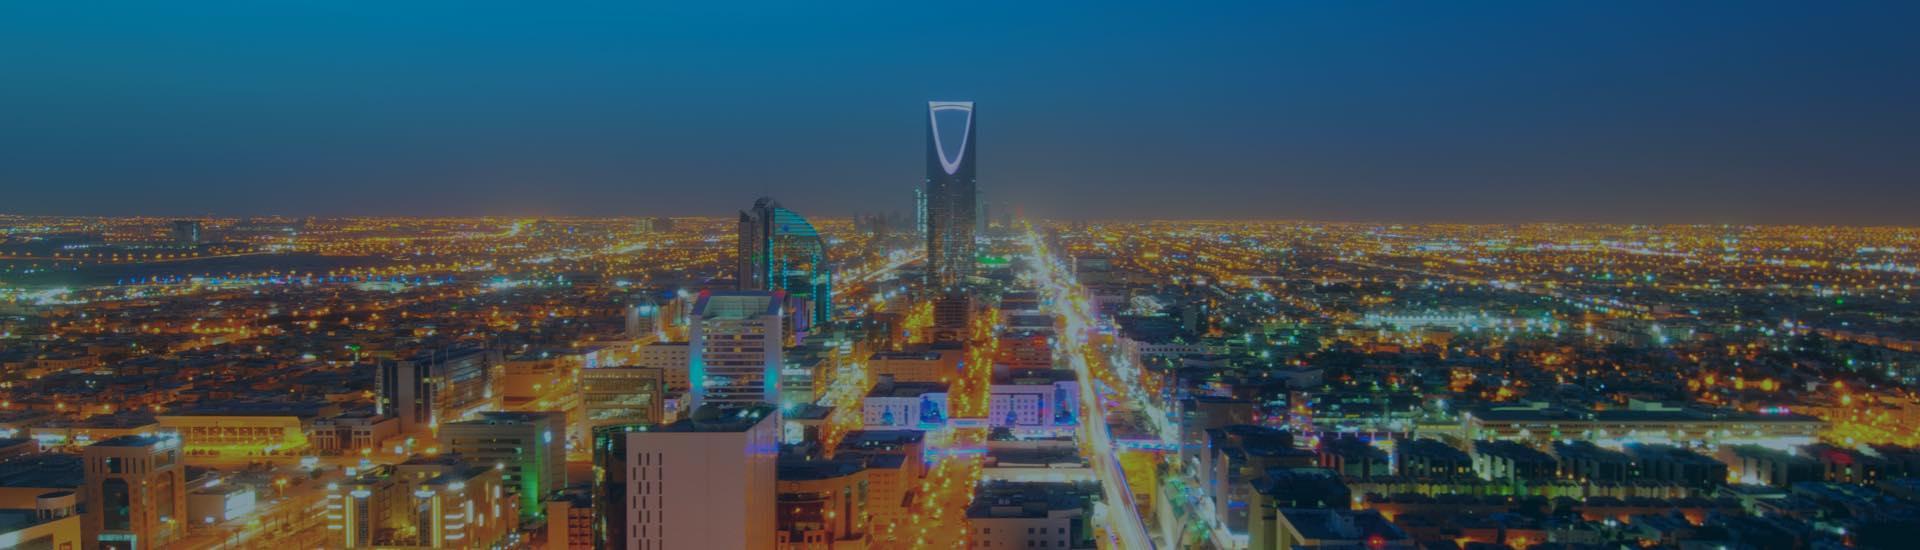 ابحث عن أفضل الفنادق في الرياض